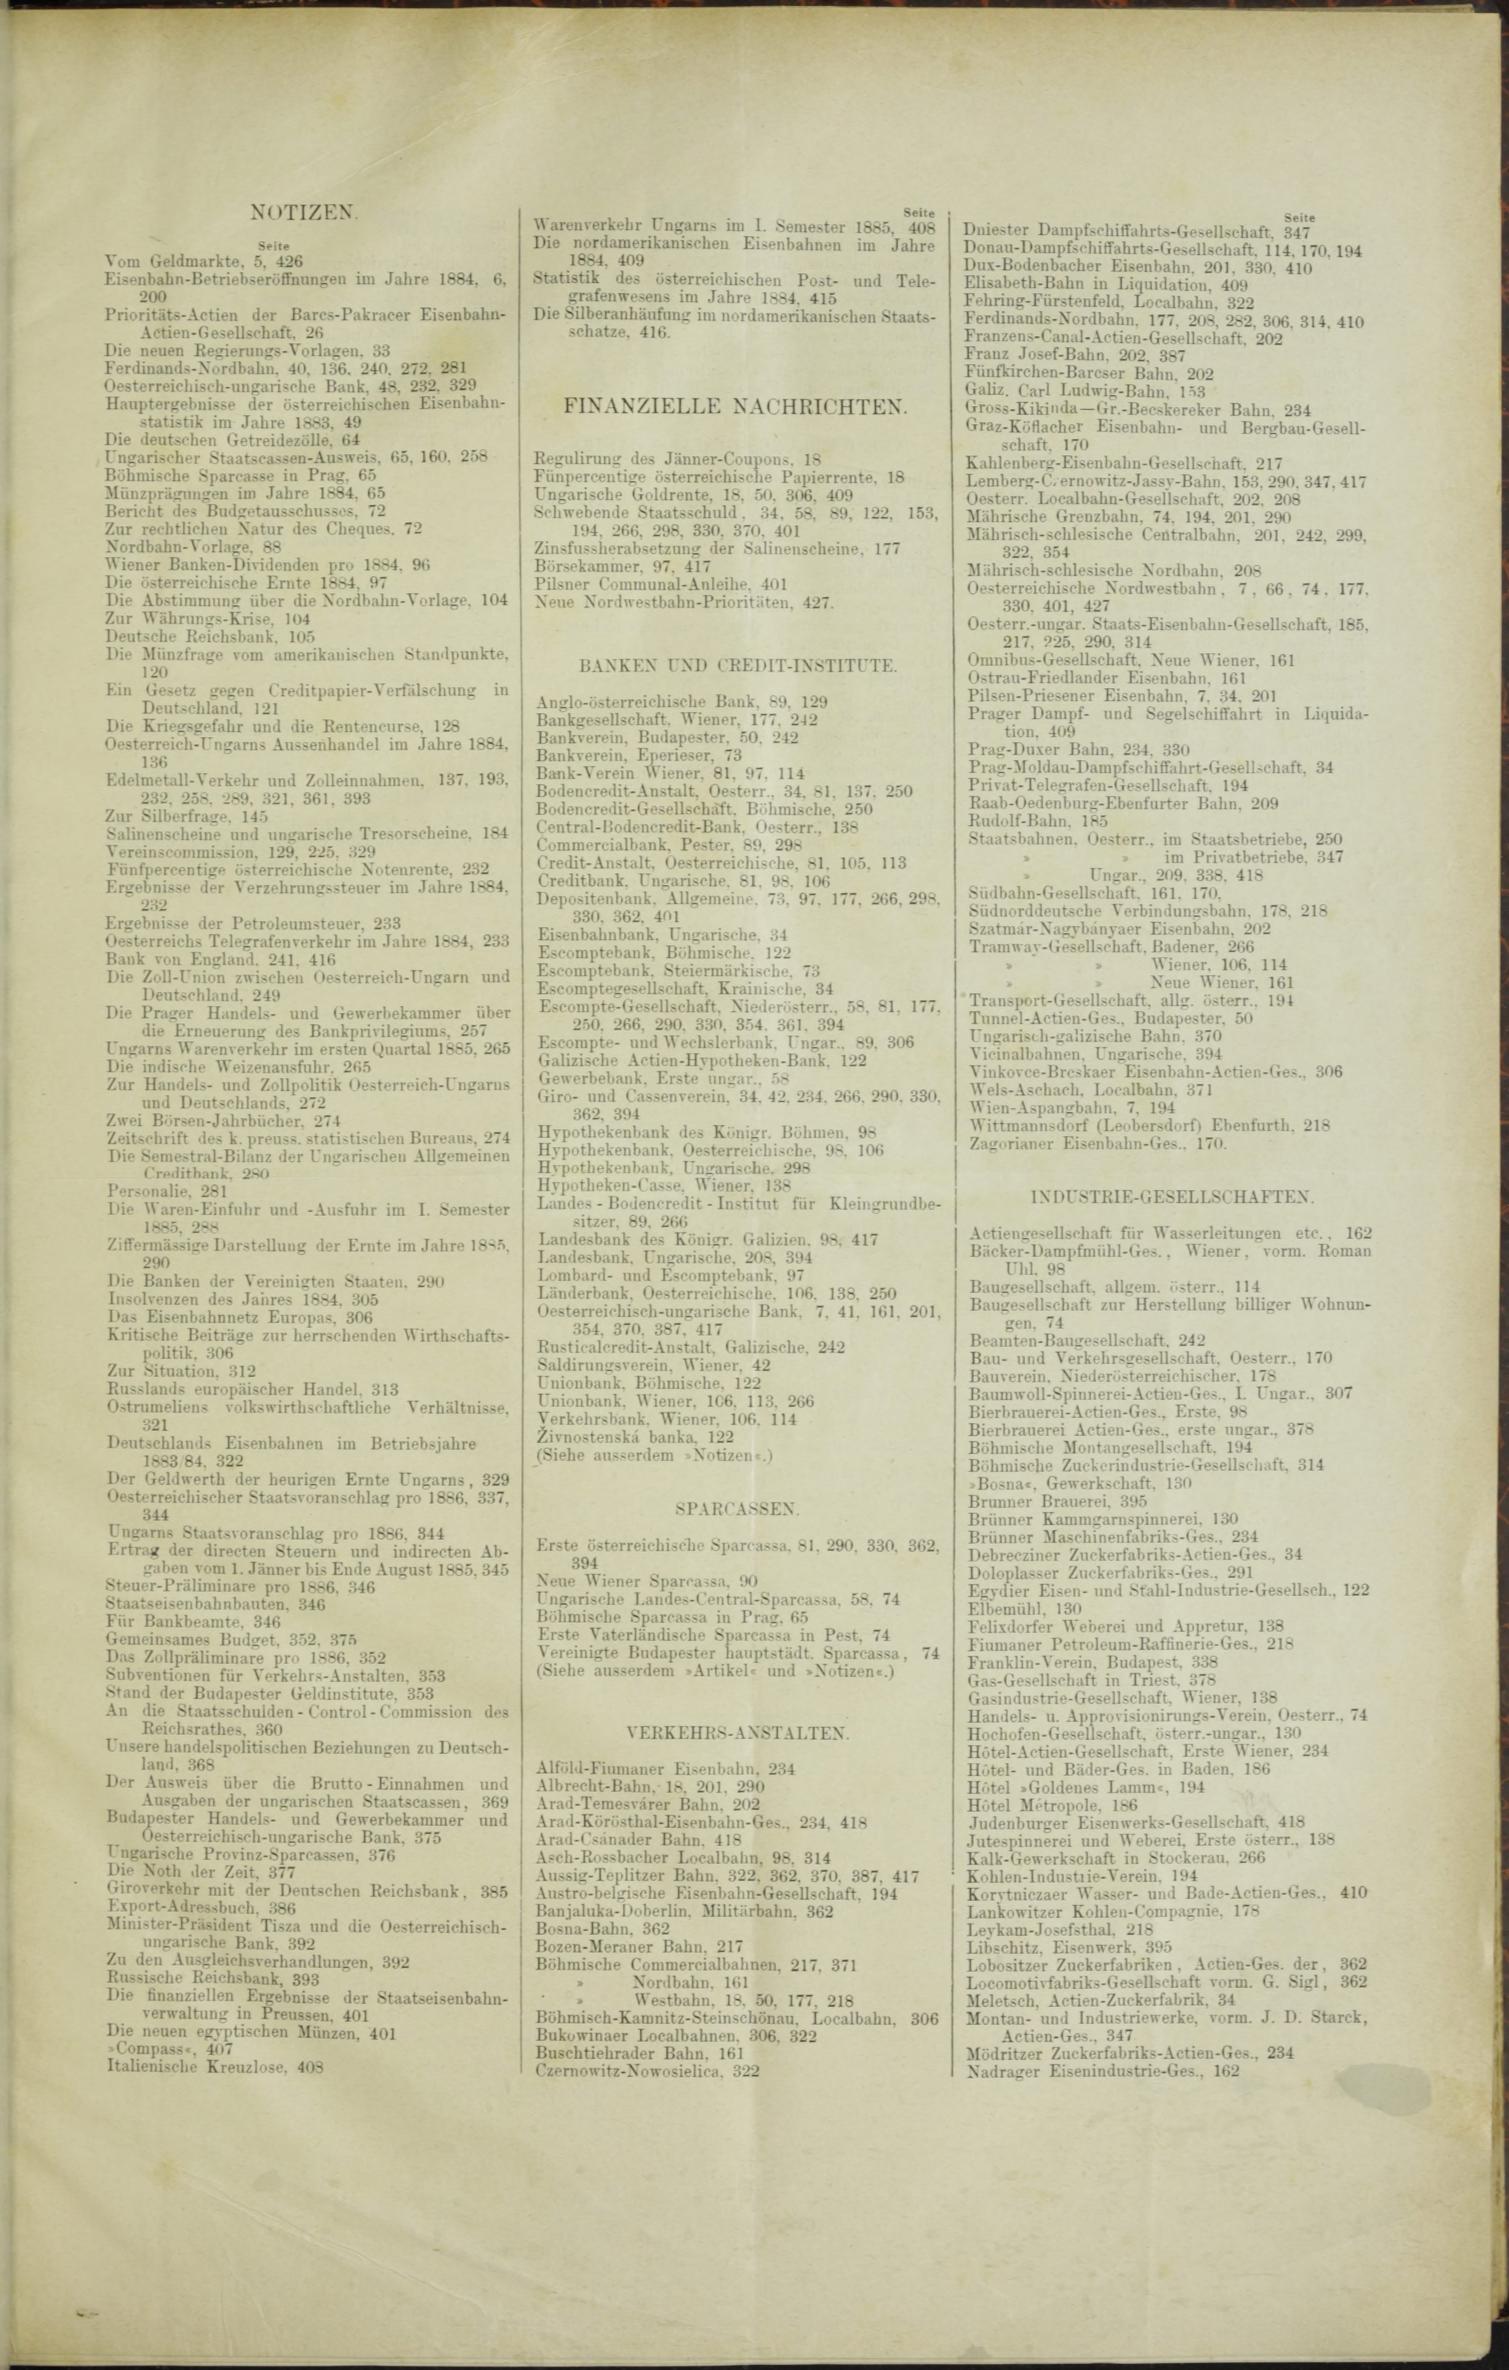 Der Tresor 19.02.1885 - Seite 11